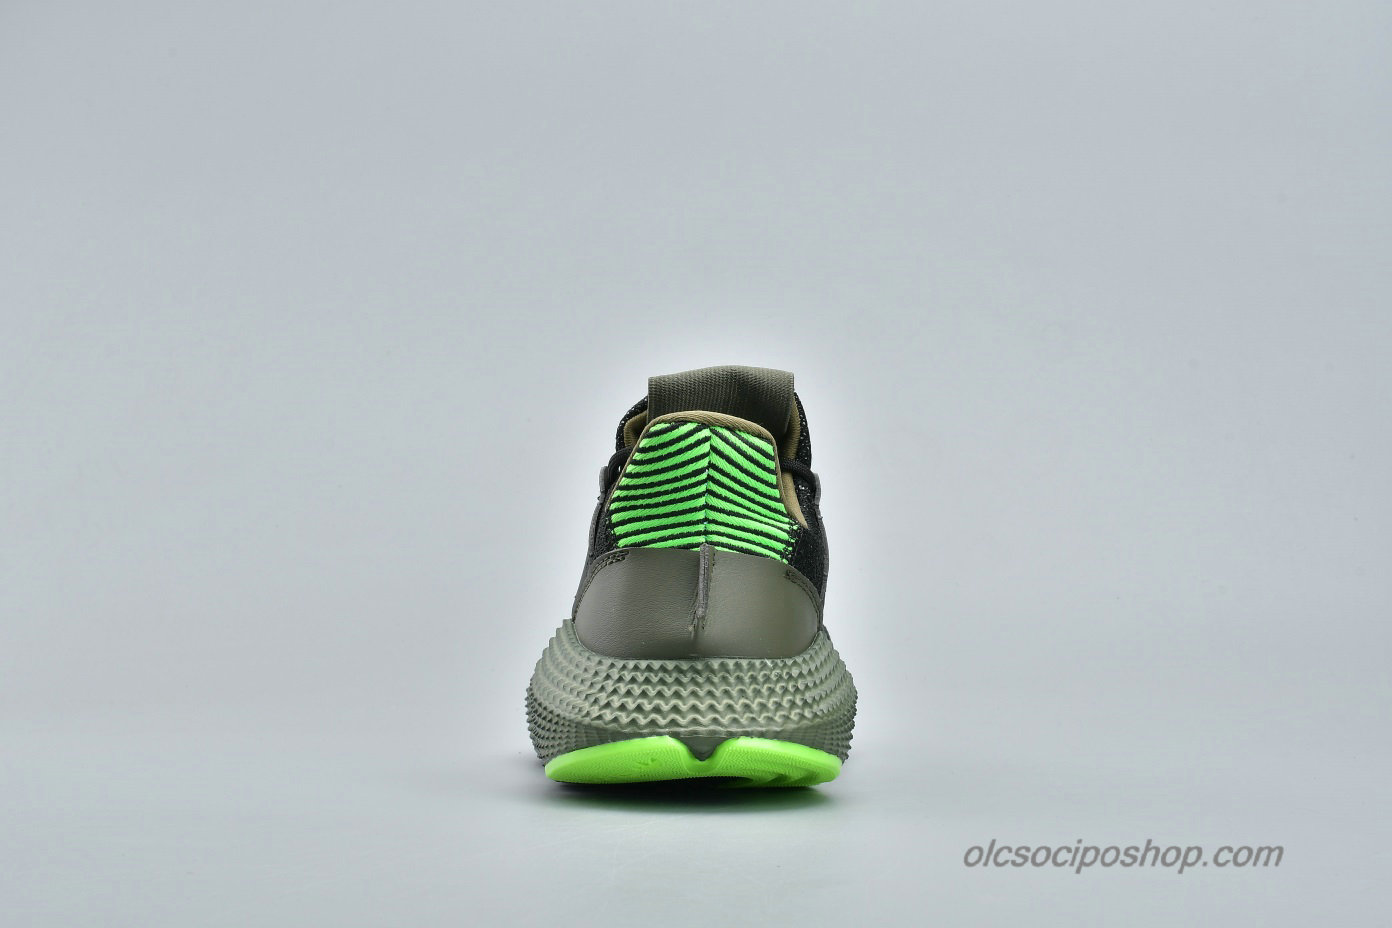 Adidas Prophere Undftd Fekete/Olajbogyó/Zöld Cipők (B37467) - Kattintásra bezárul